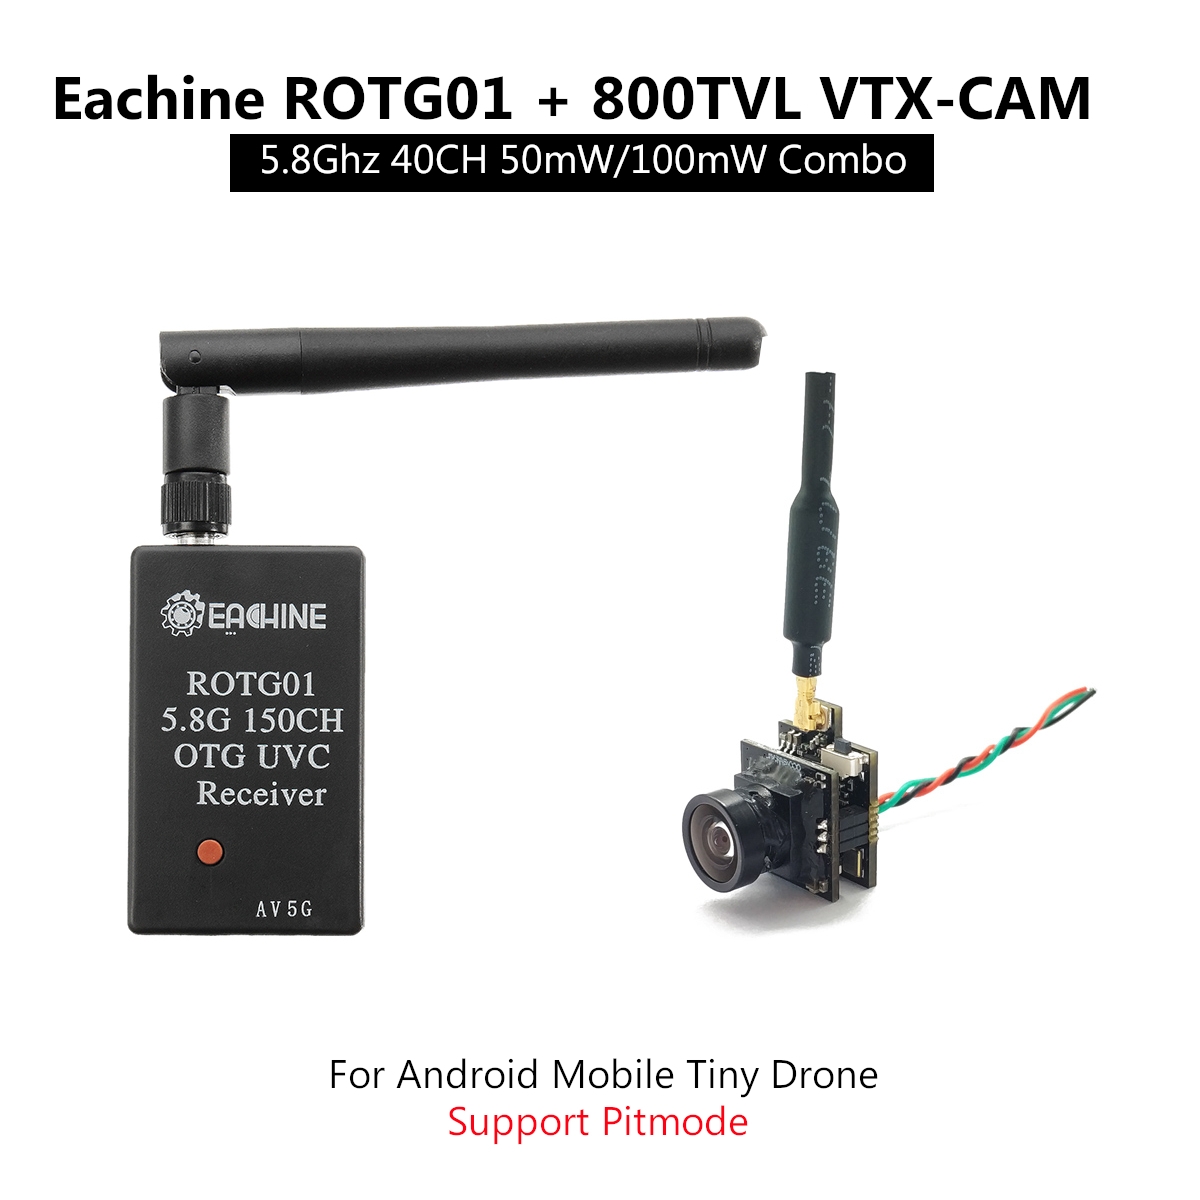 Eachine ROTG01 + 800tvl VTX-CAM UVC OTG 5.8G 40CH 50mW/100mW/Pitmode FPV Camera Transmitter Receiver Set For Android Smartphone